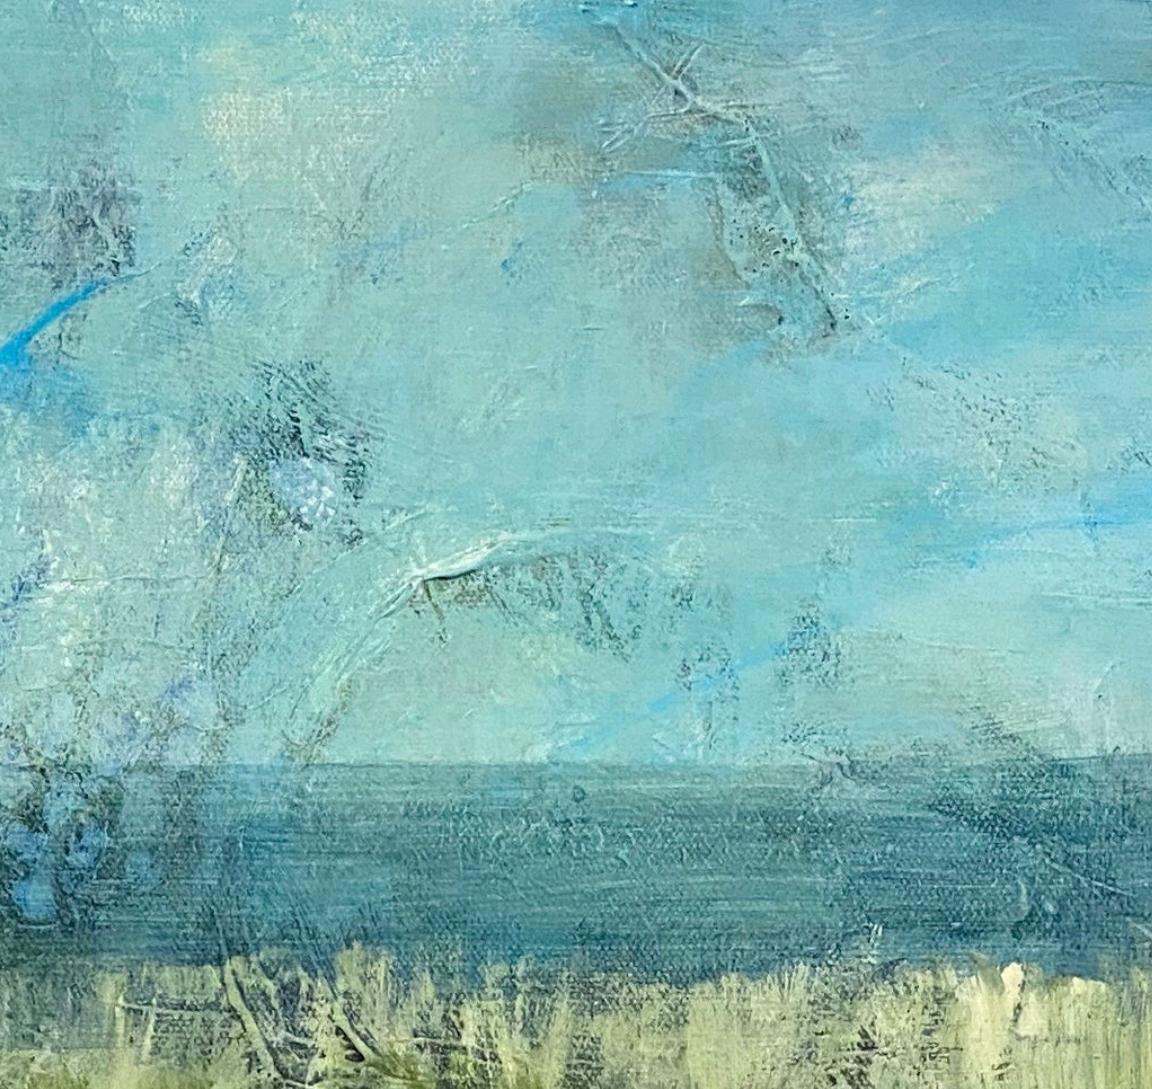 Where the Marshes run low, abstrakte Landschaft, grn und blau. Smpfe (Abstrakter Impressionismus), Painting, von Juanita Bellavance 